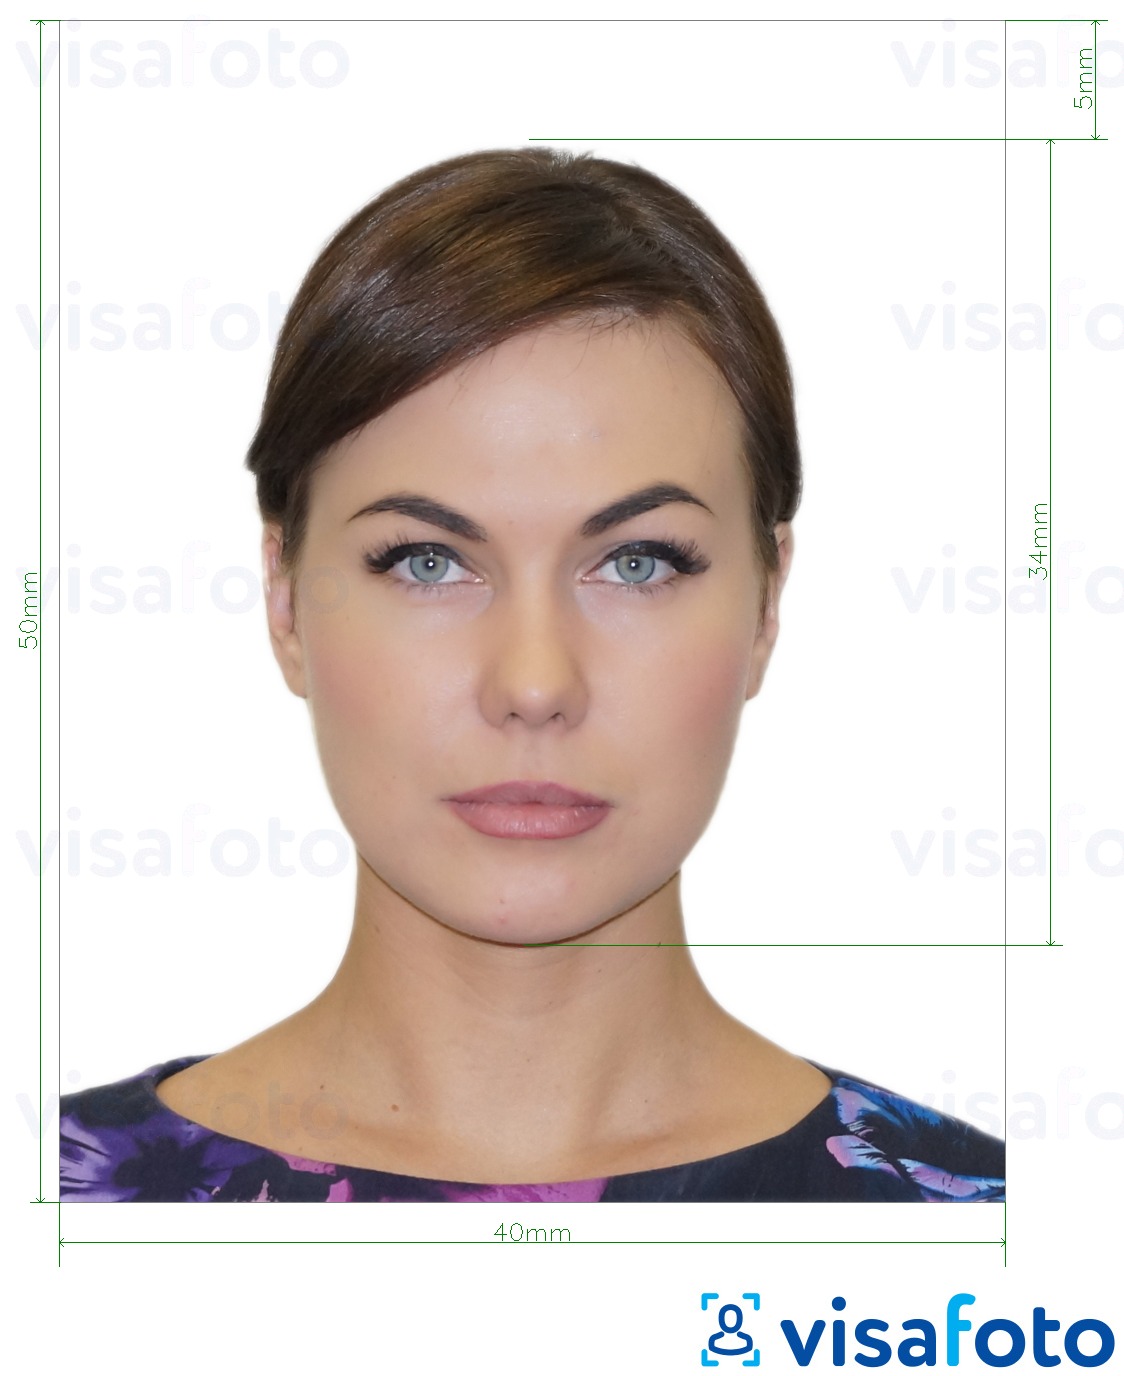 Exemples sur des photos pour Albanie visa électronique 4x5 cm avec les spécifications de taille exactes